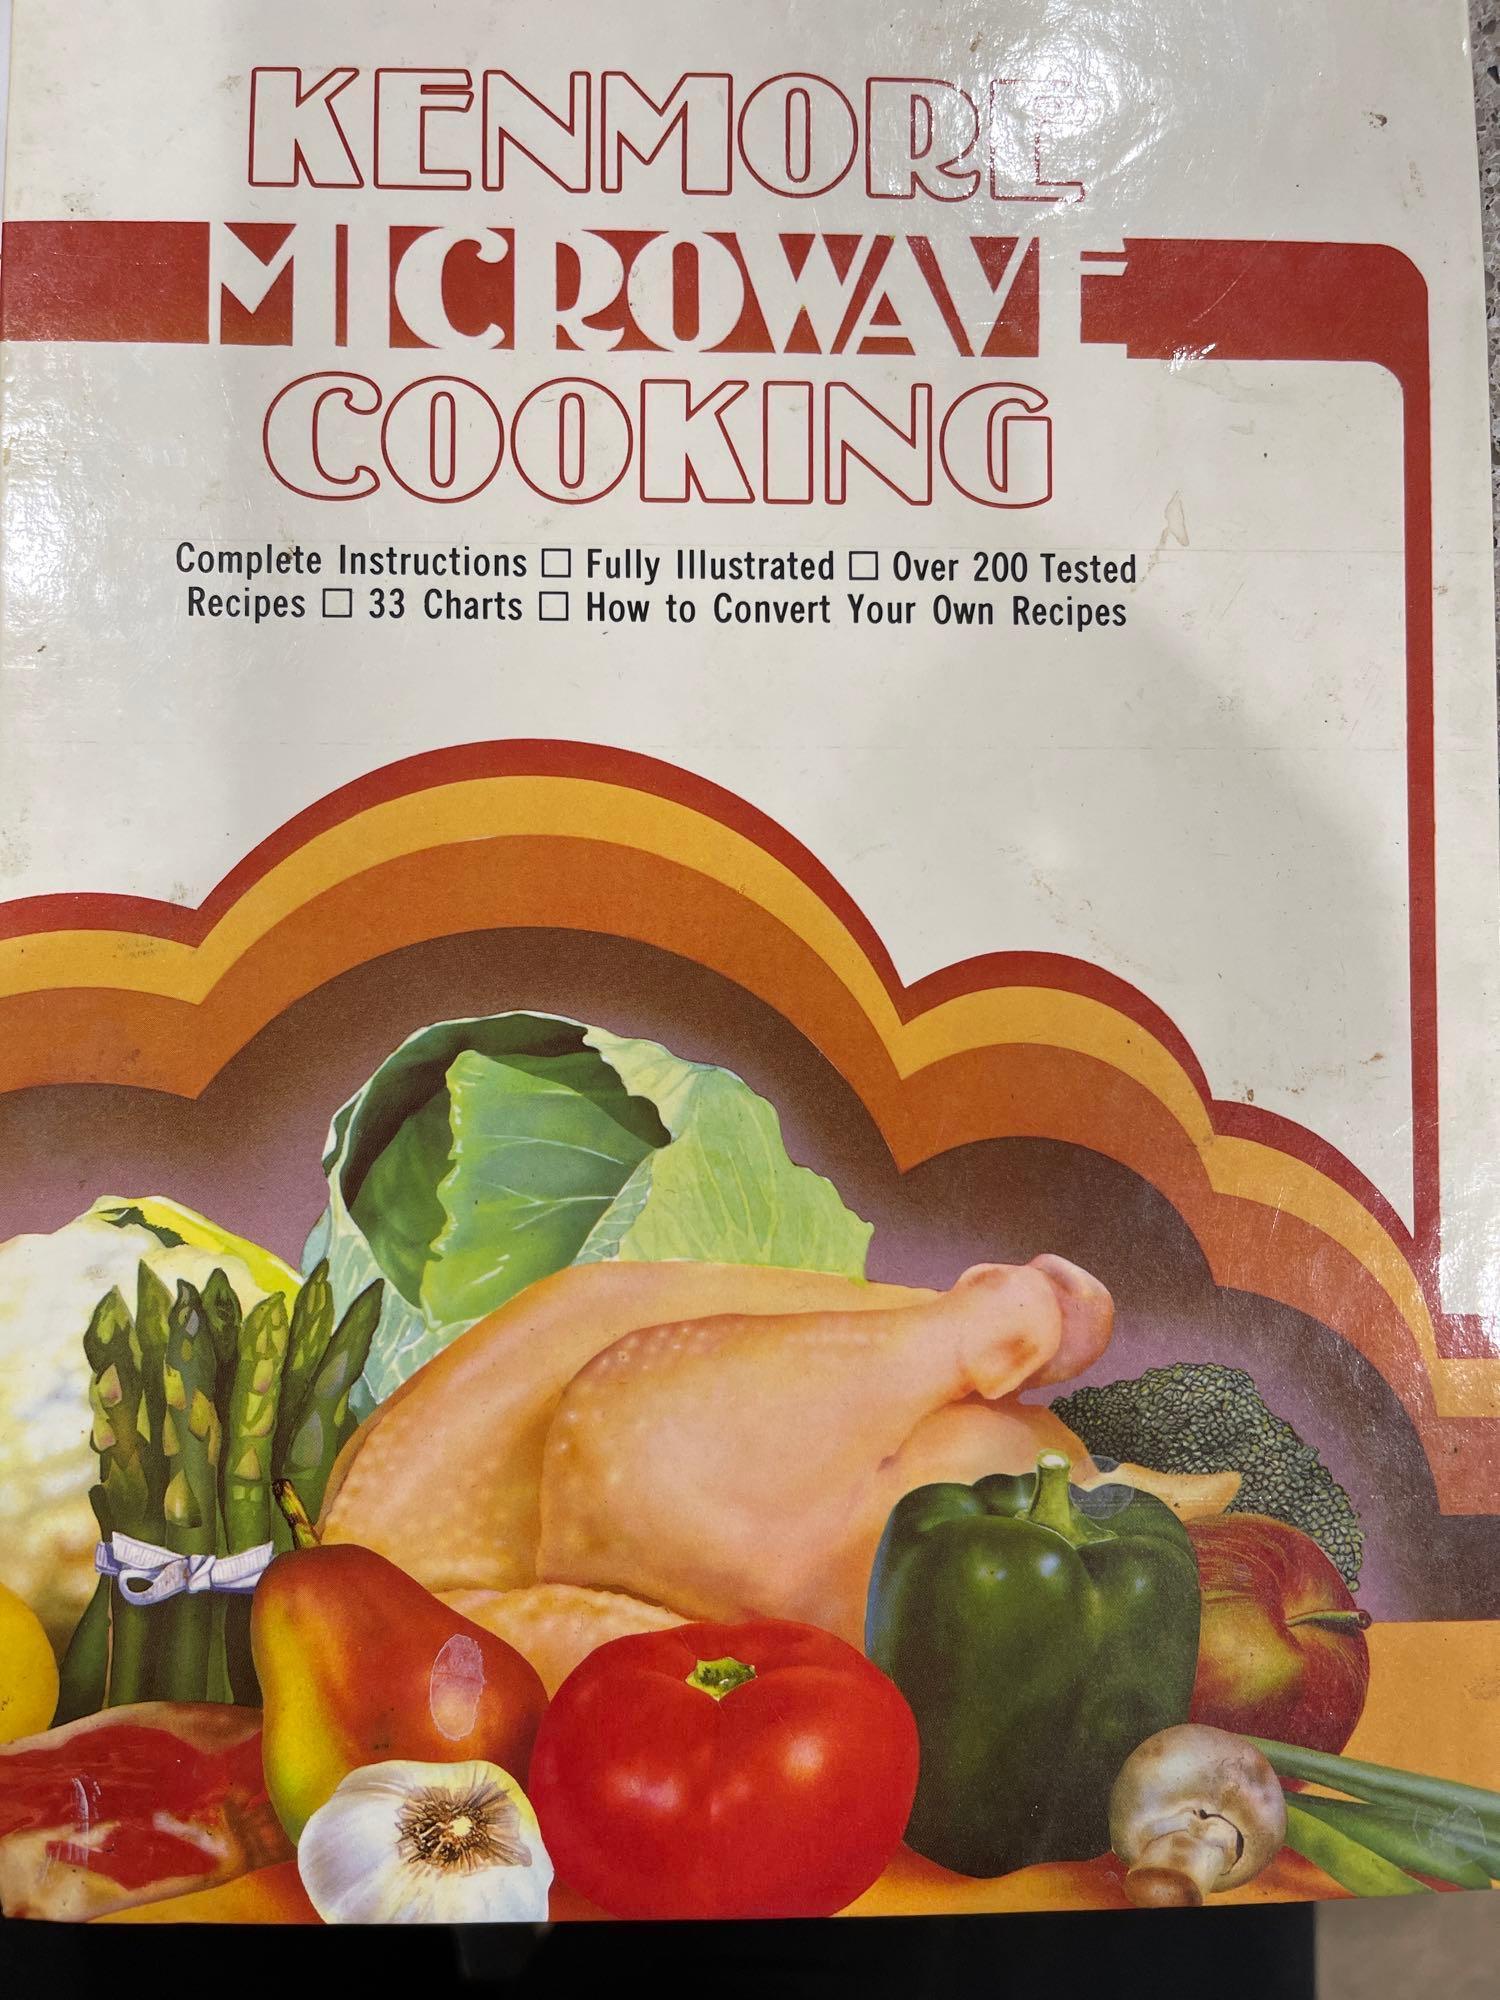 Microwave Cookbooks #1